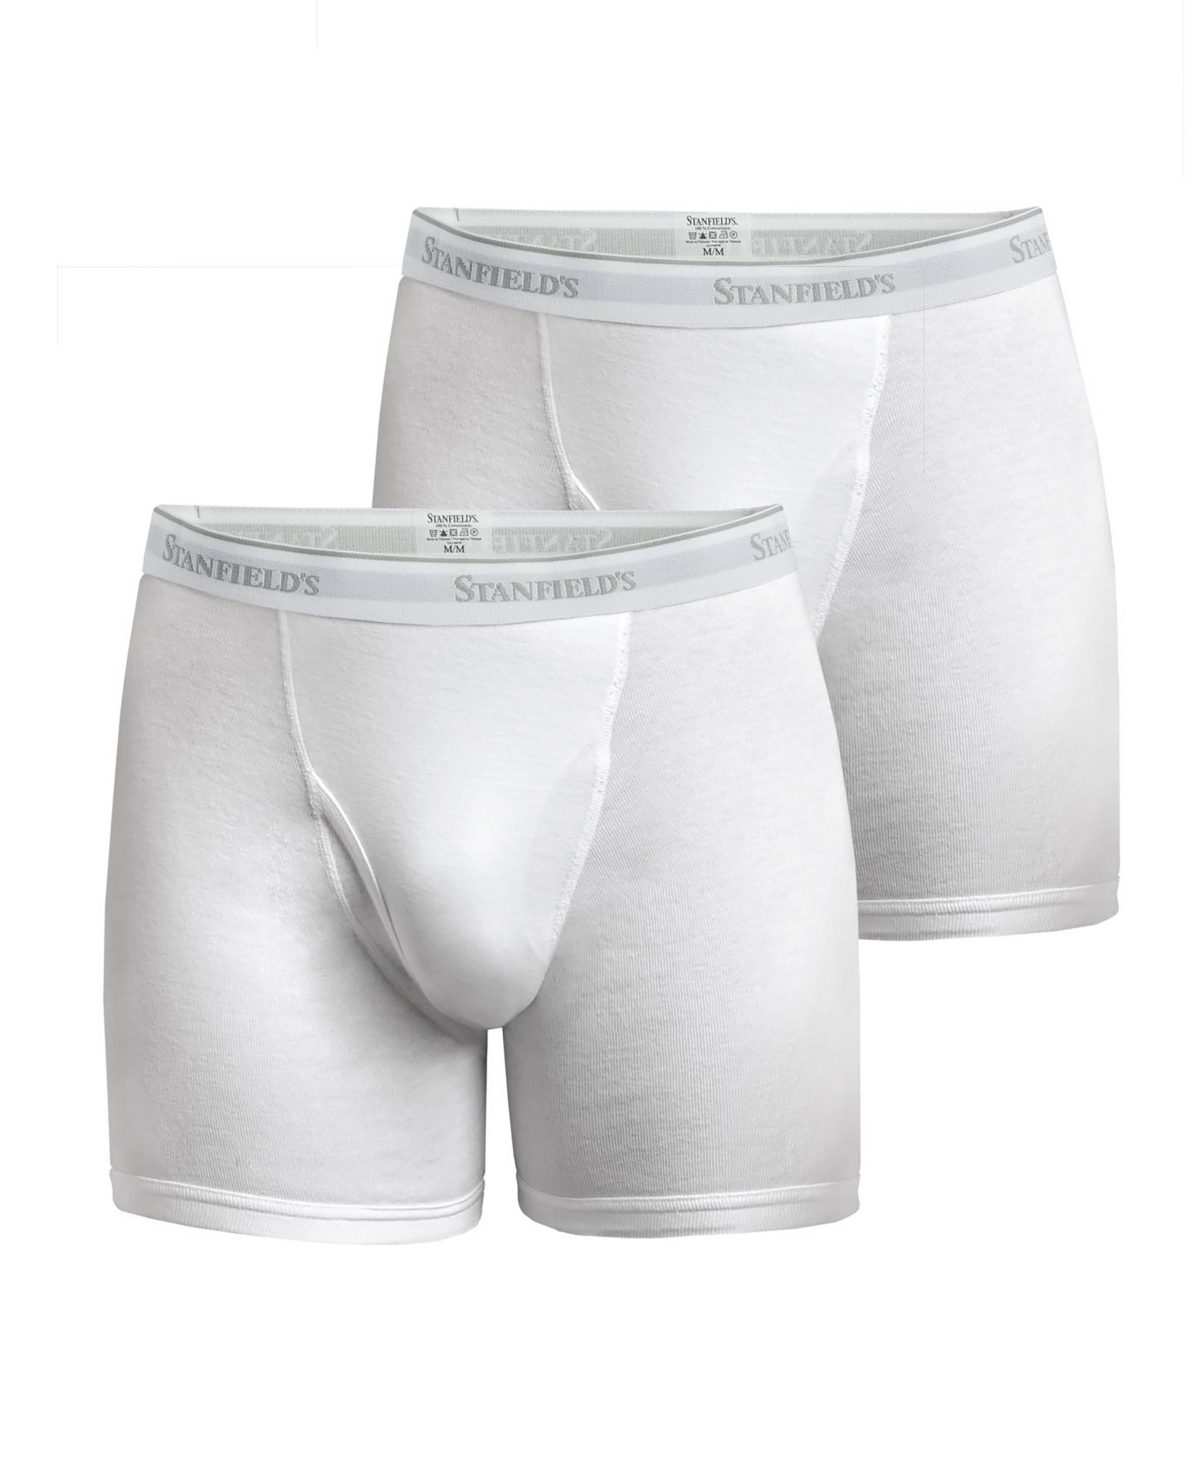 Stanfield's Premium Cotton Men's 2 Pack Boxer Brief Underwear In White